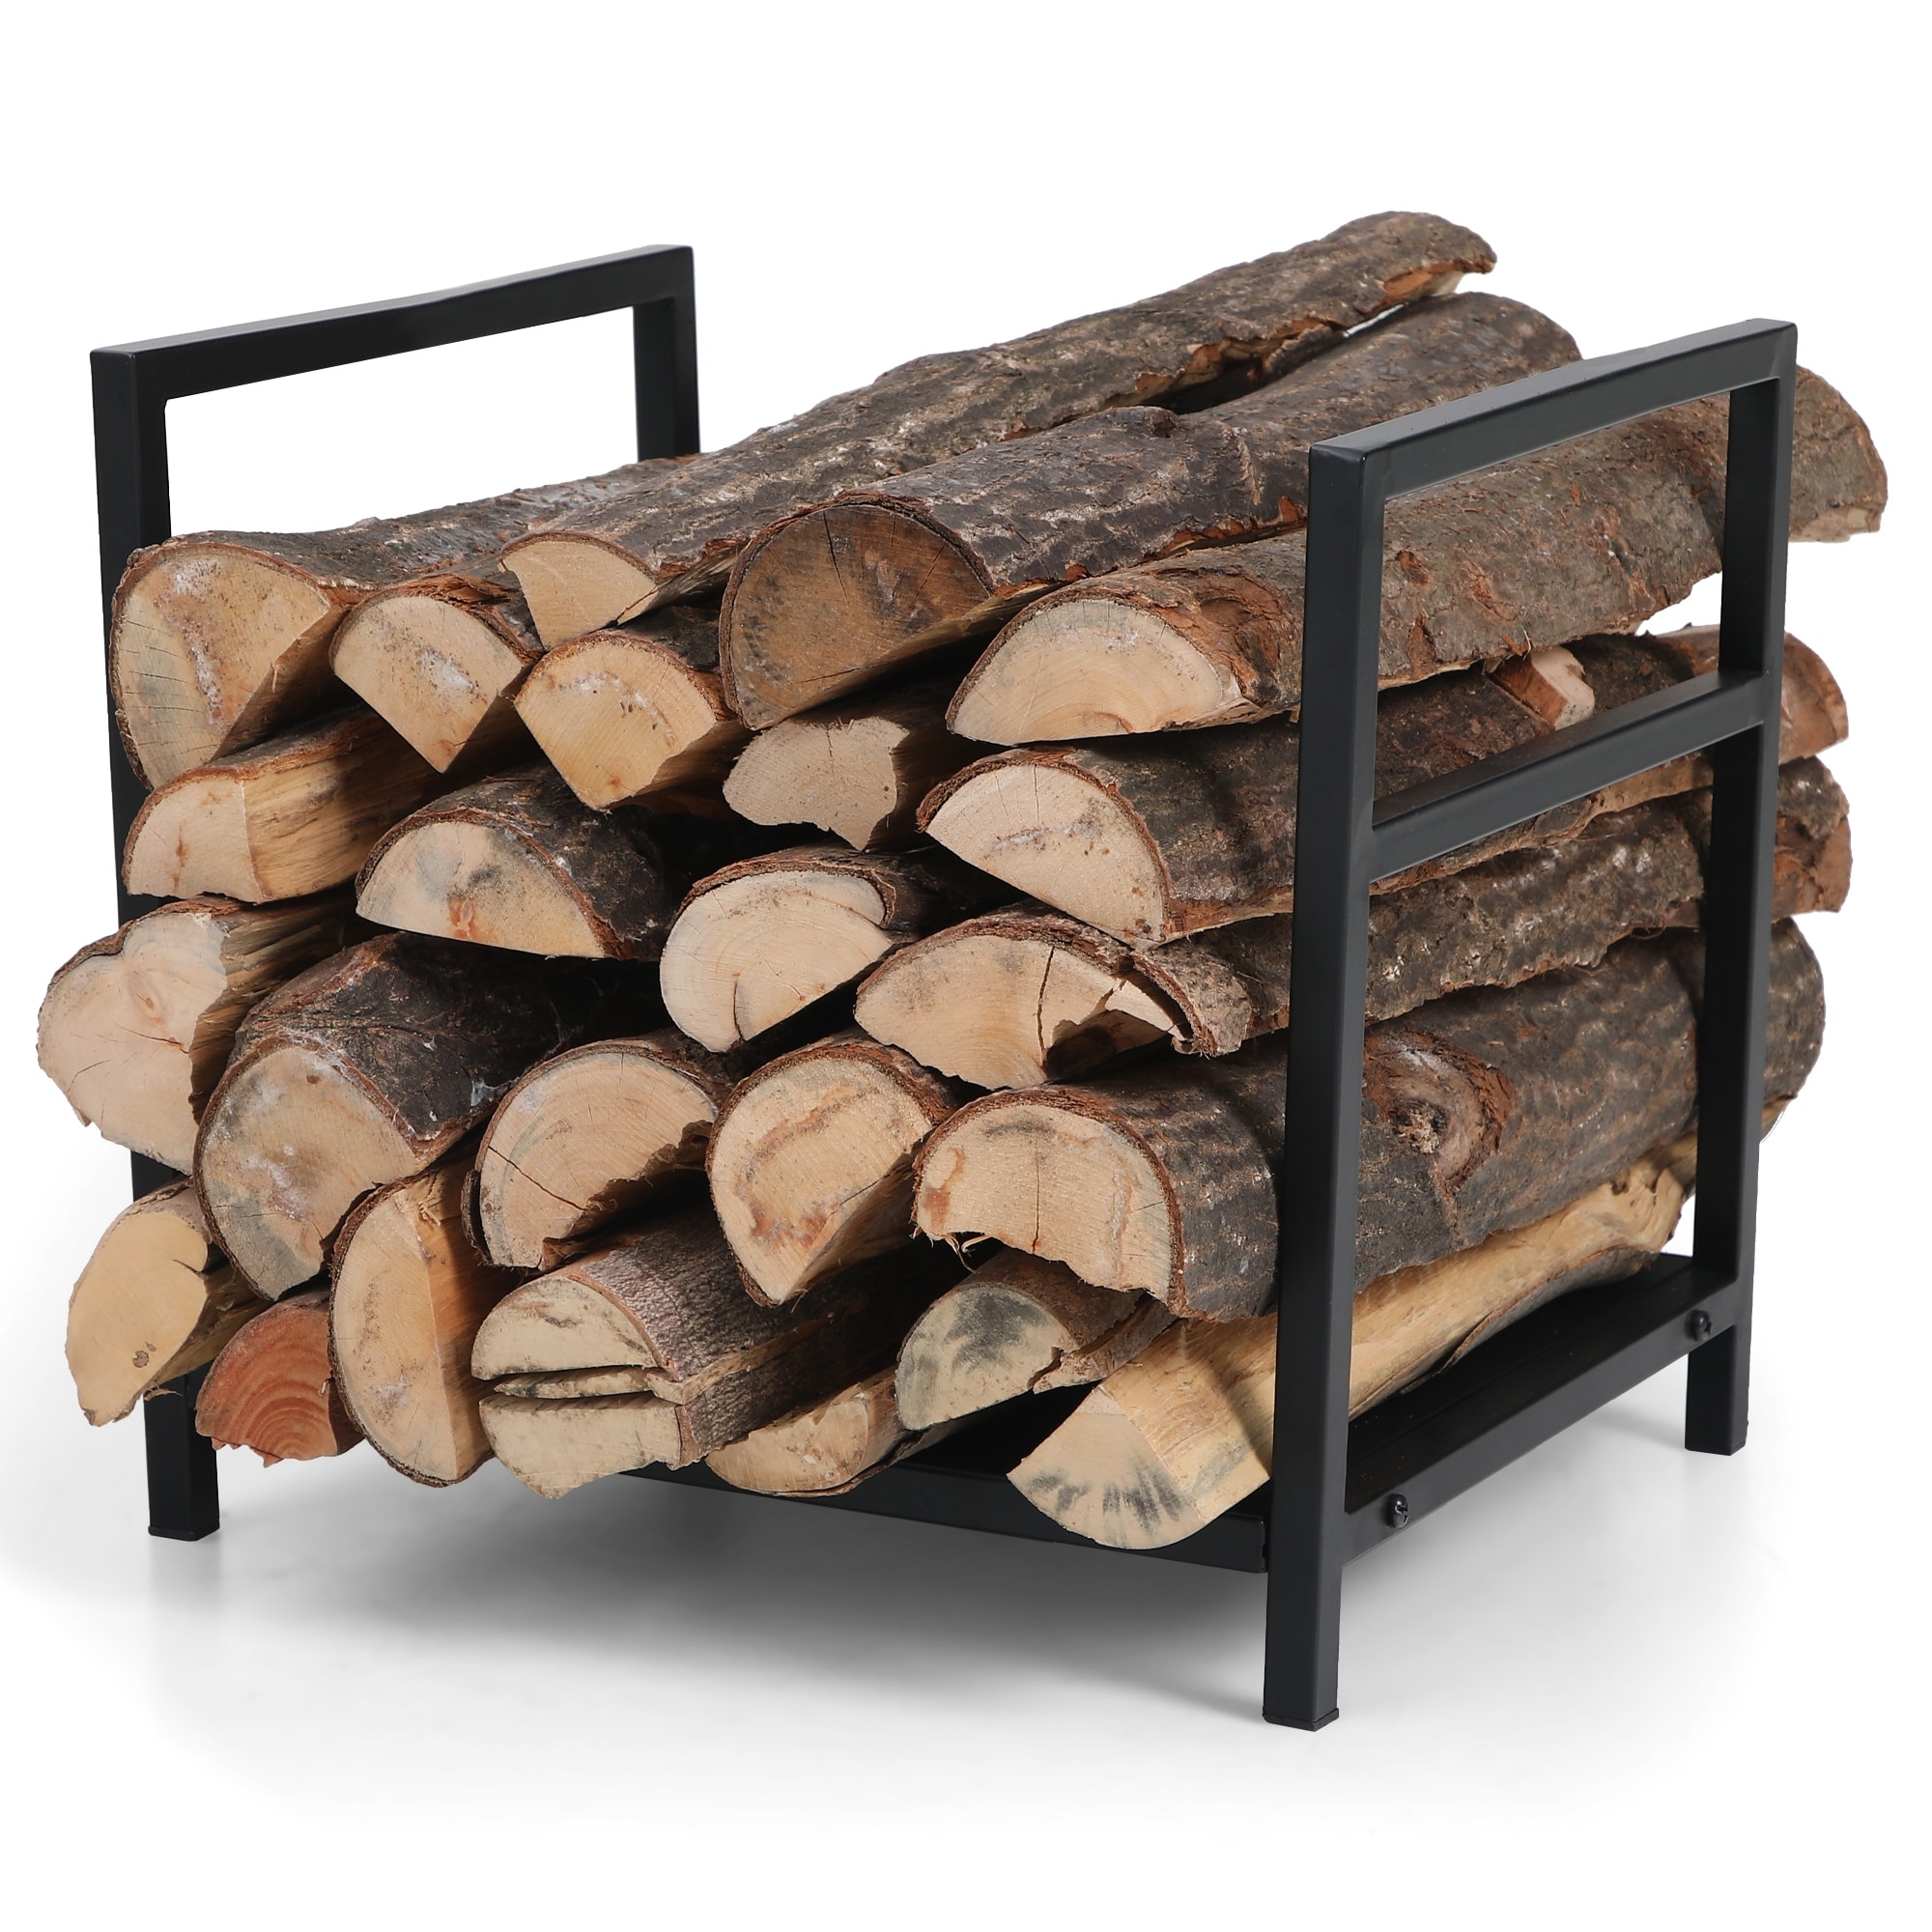 PHI VILLA 17 Inch Firewood Log Rack Bin Indoor/Outdoor Decor Steel